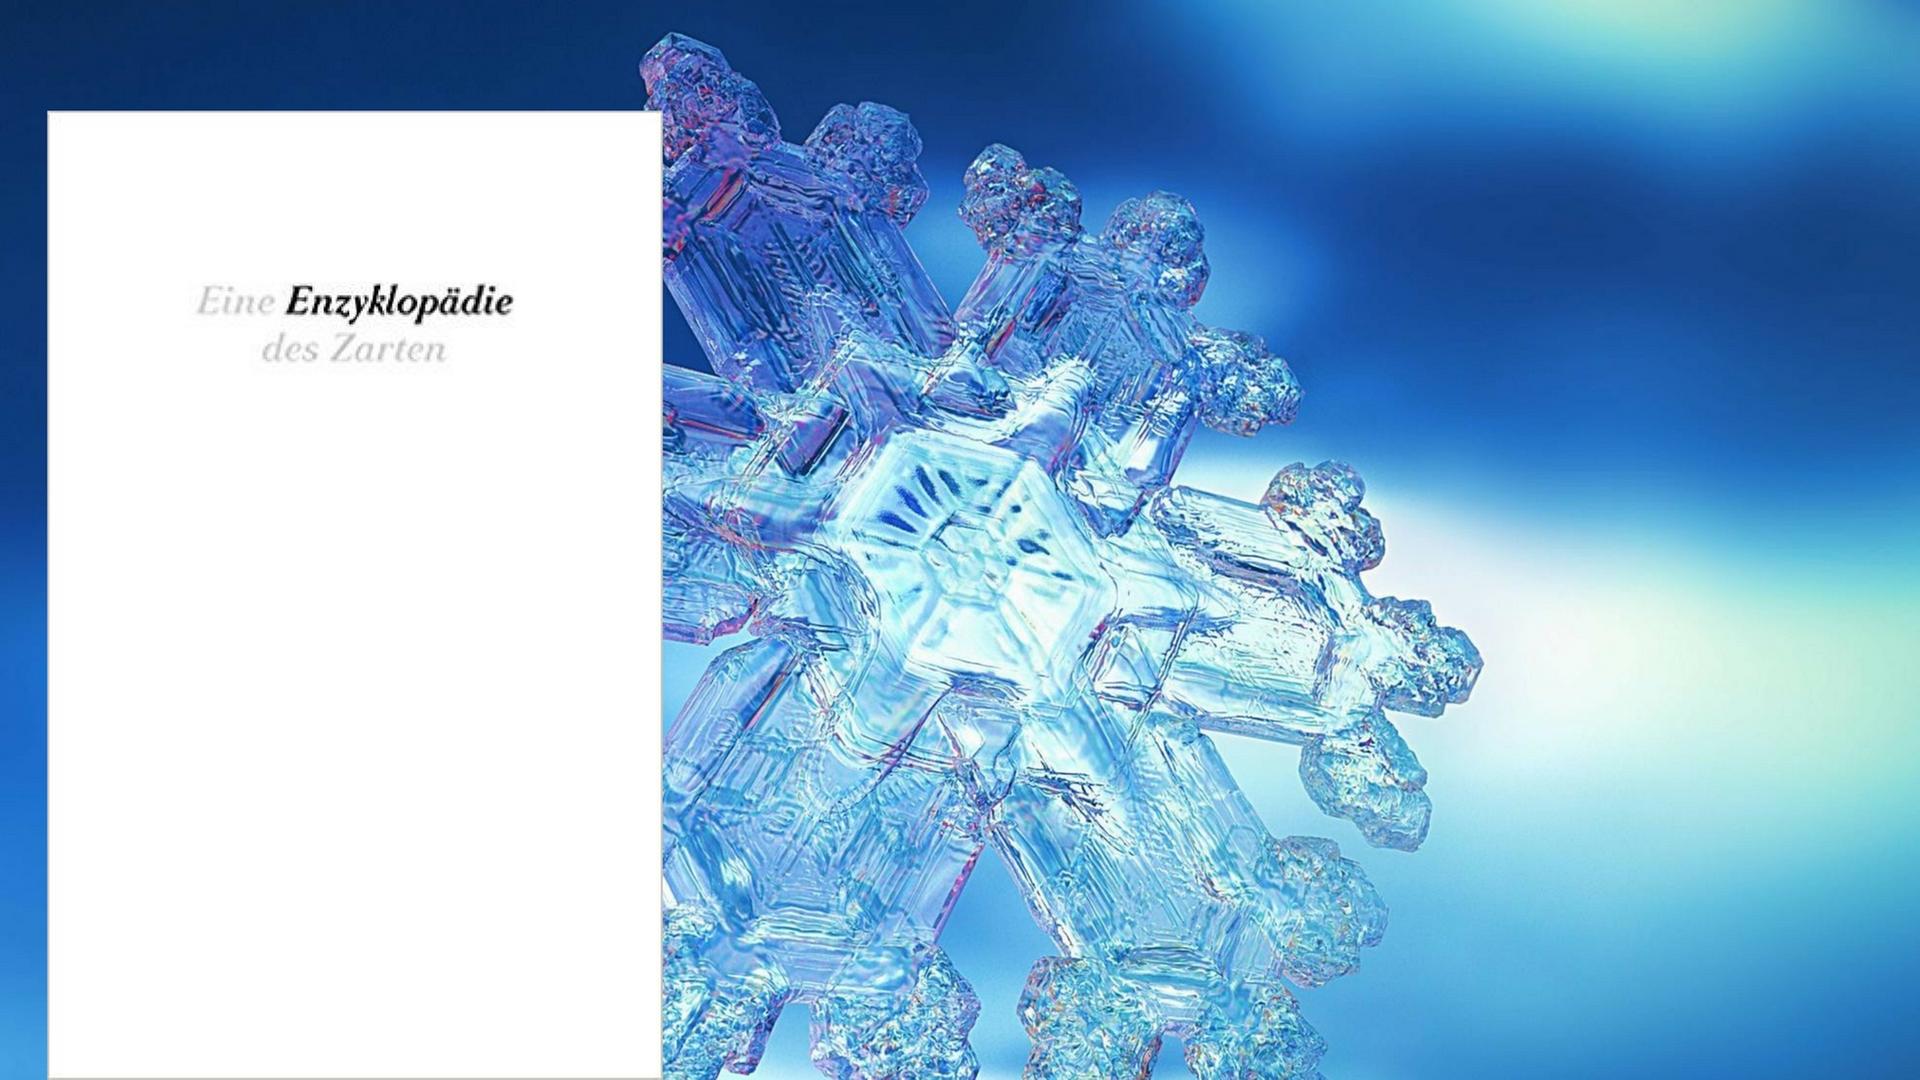 Cover von "Eine Enzyklopädie des Zarten", eine Schneeflocke